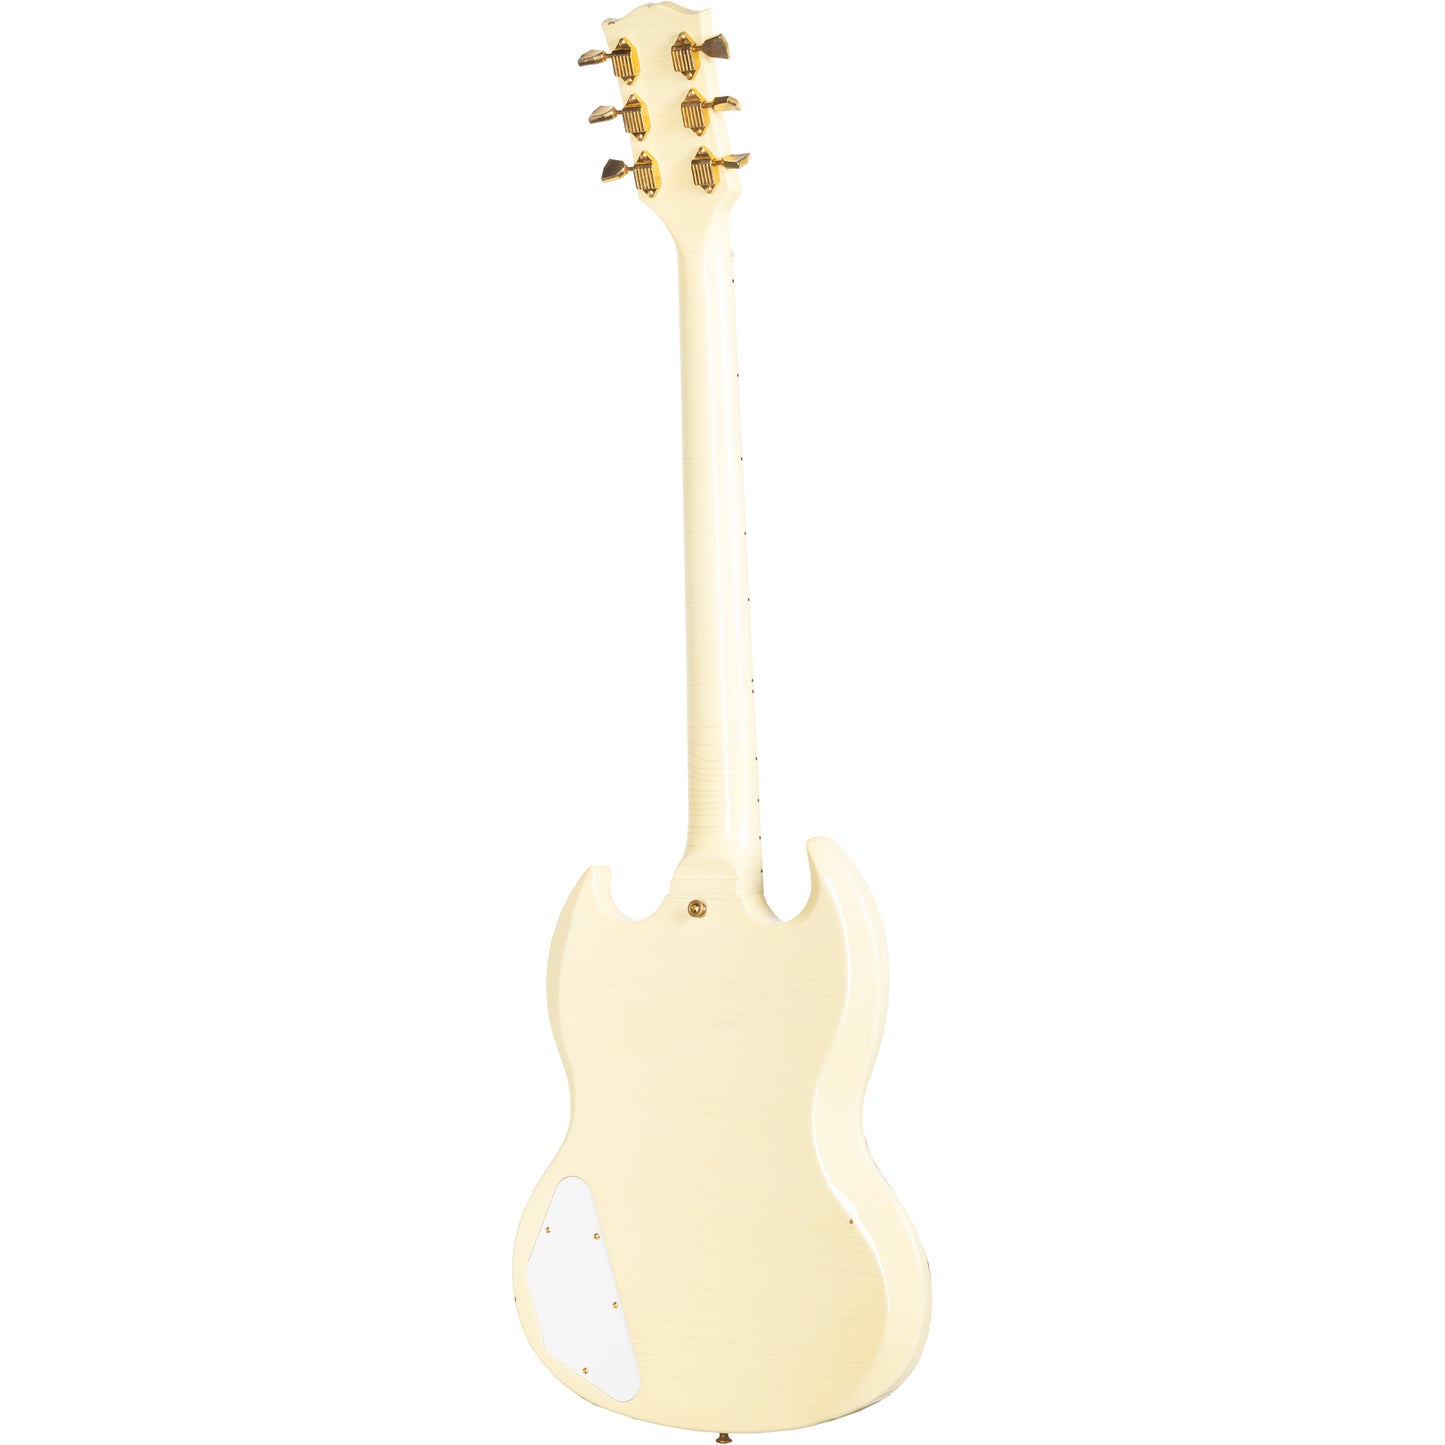 Gibson Jimi Hendrix ‘67 SG Custom Electric Guitar - White Aged